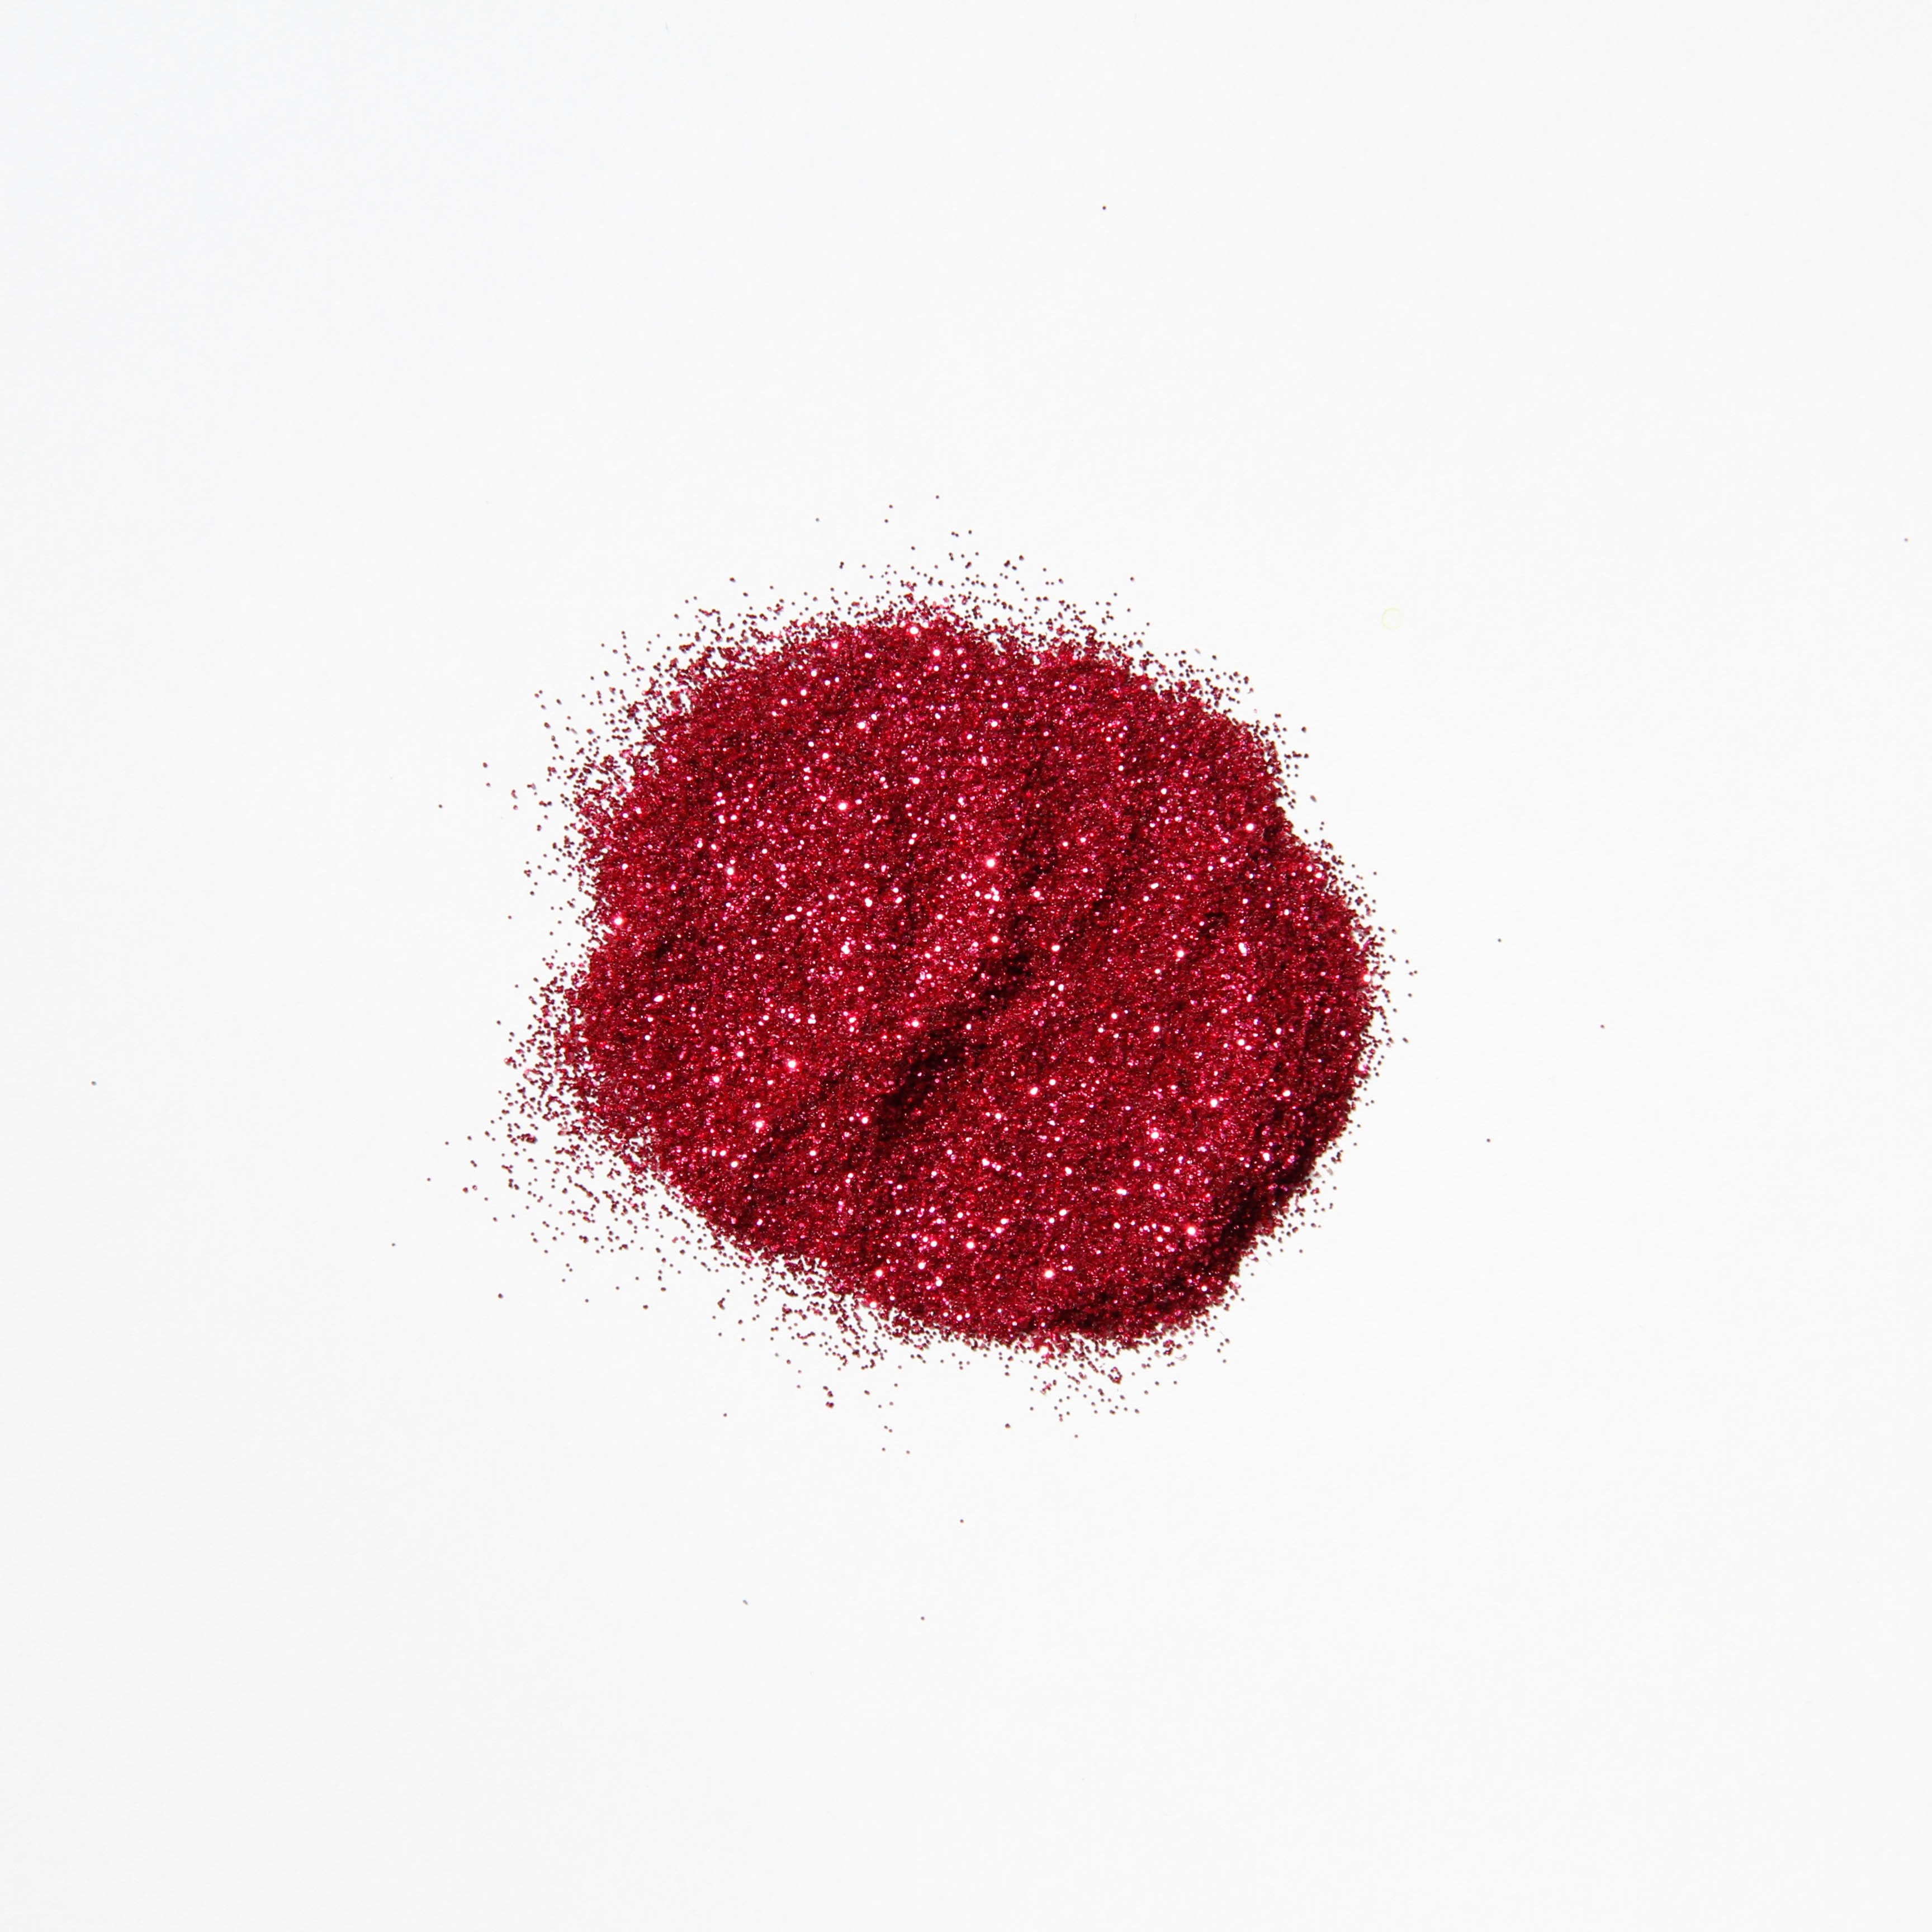 Ruby Rose Glitter-Design Blanks